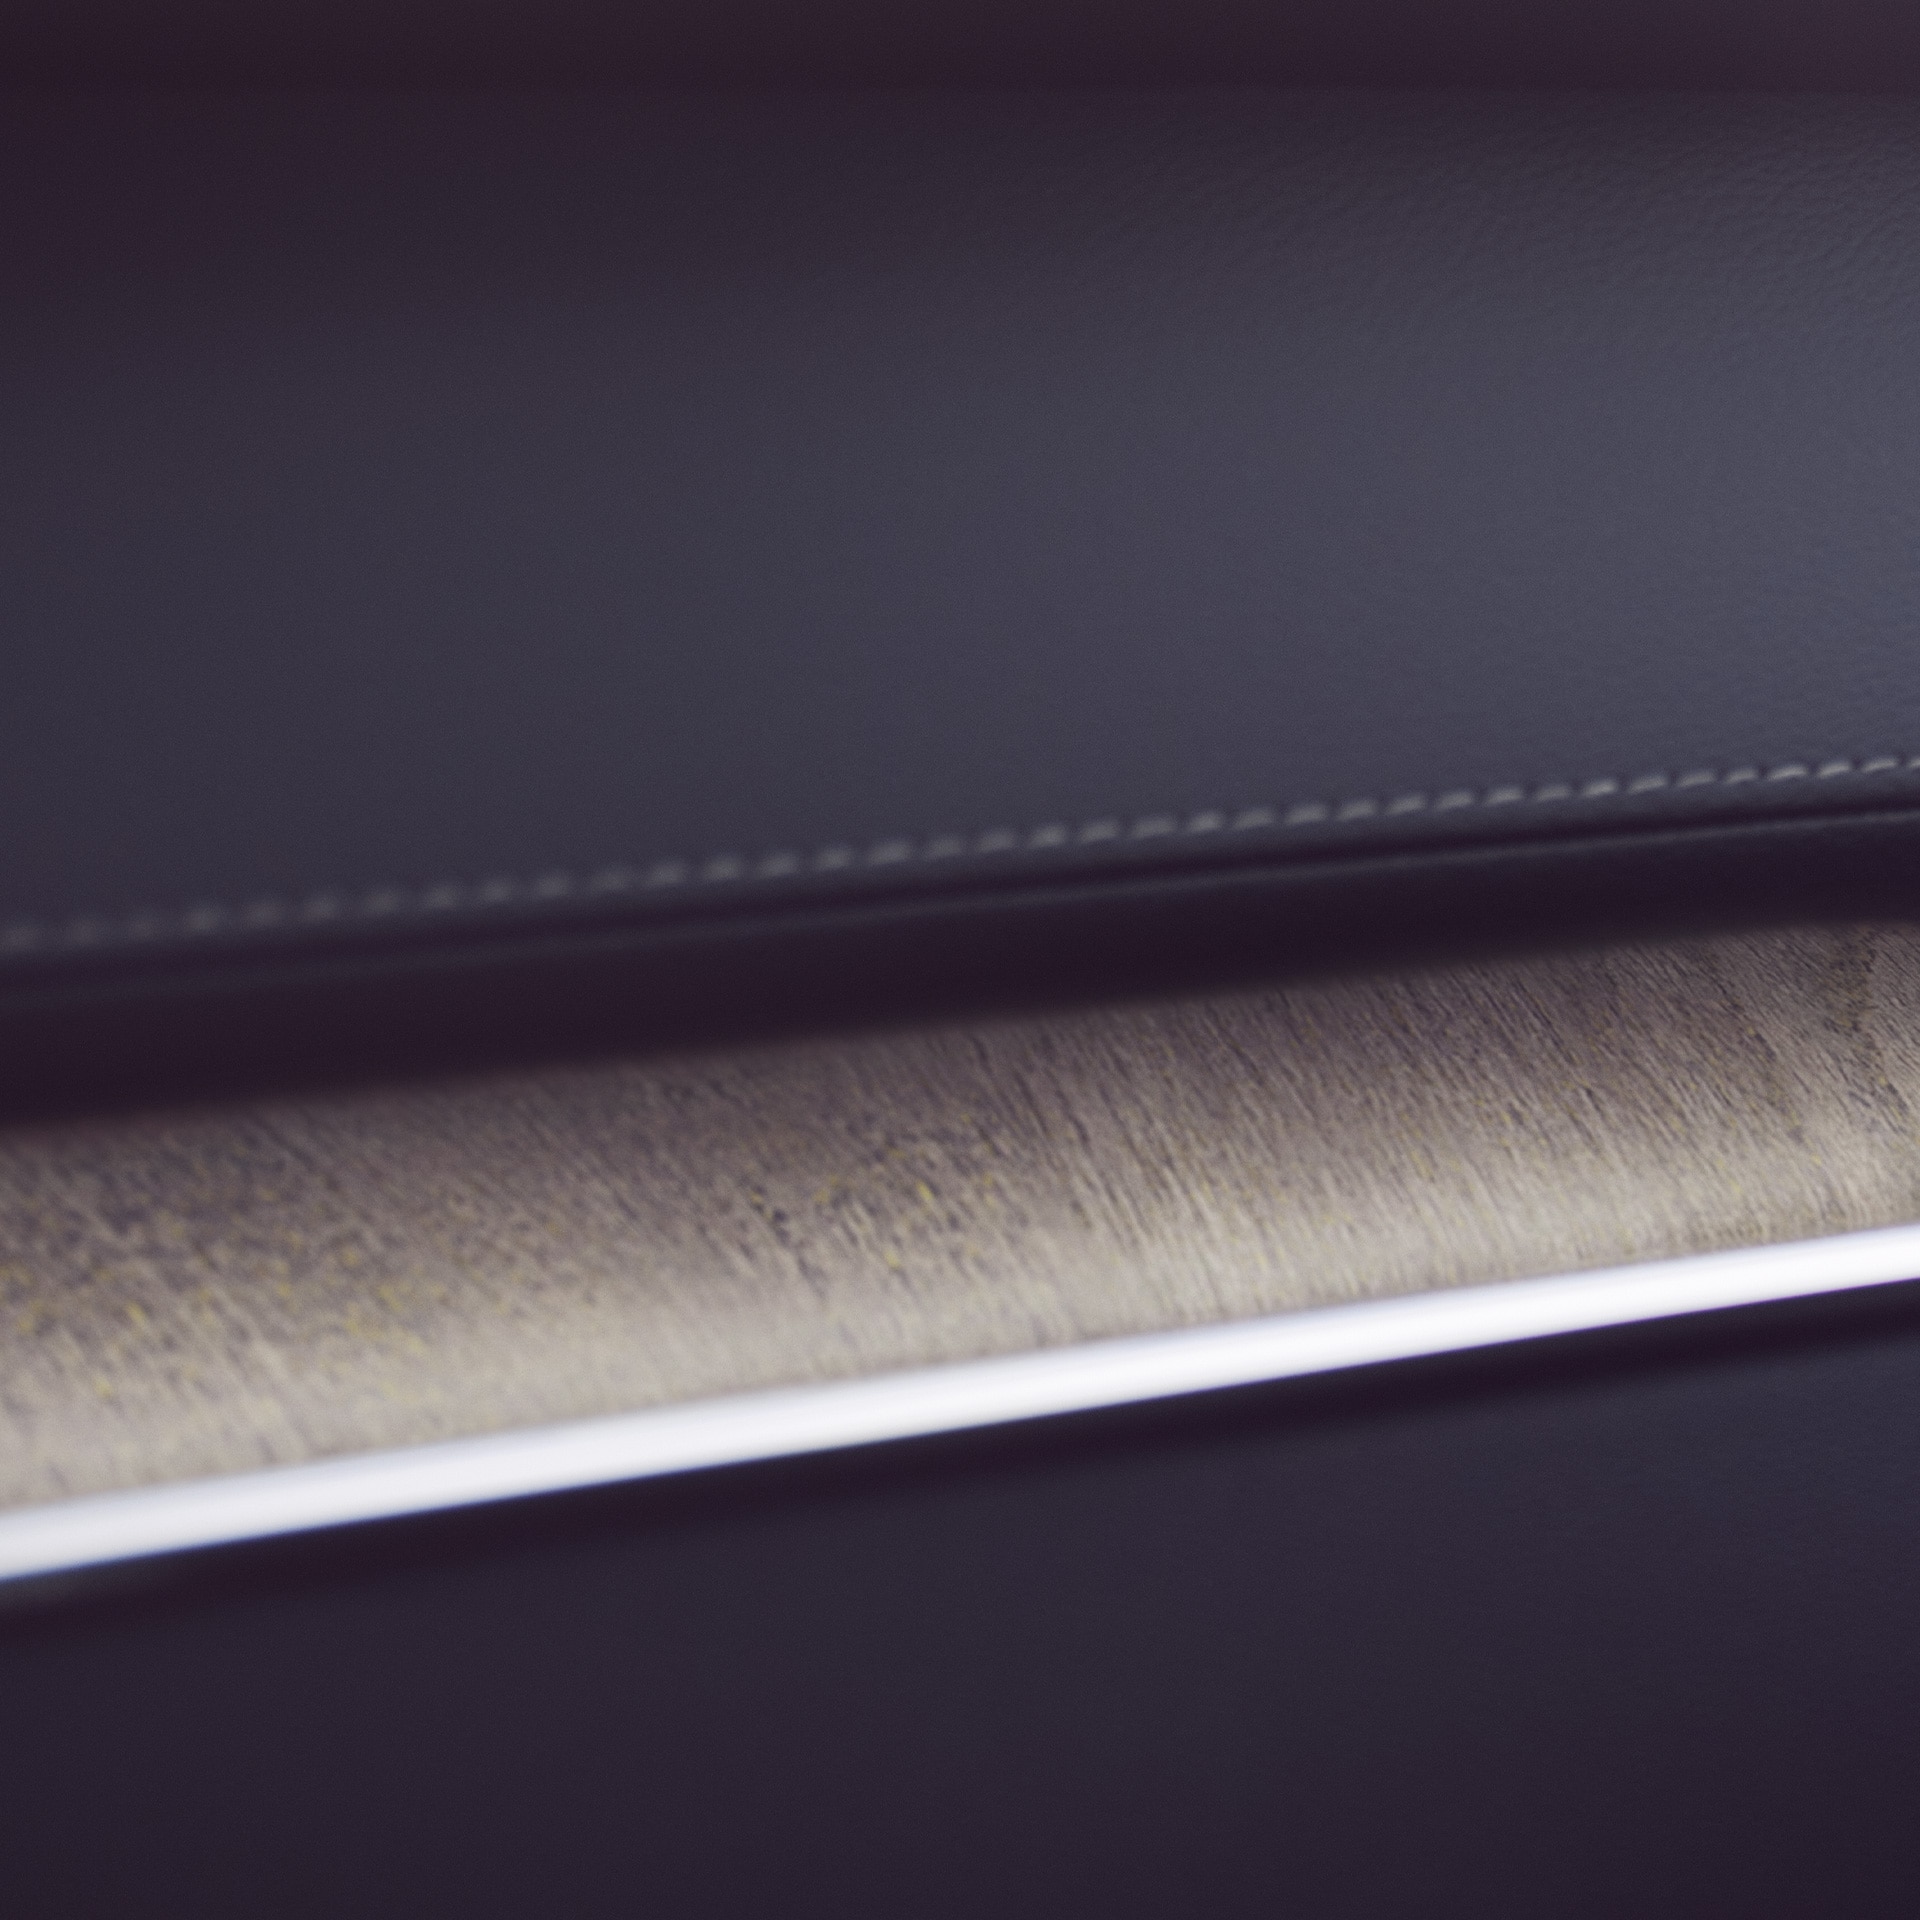 Điểm nhấn trang trí bằng gỗ lũa trong xe Volvo XC60 làm tăng thêm nét tự nhiên.